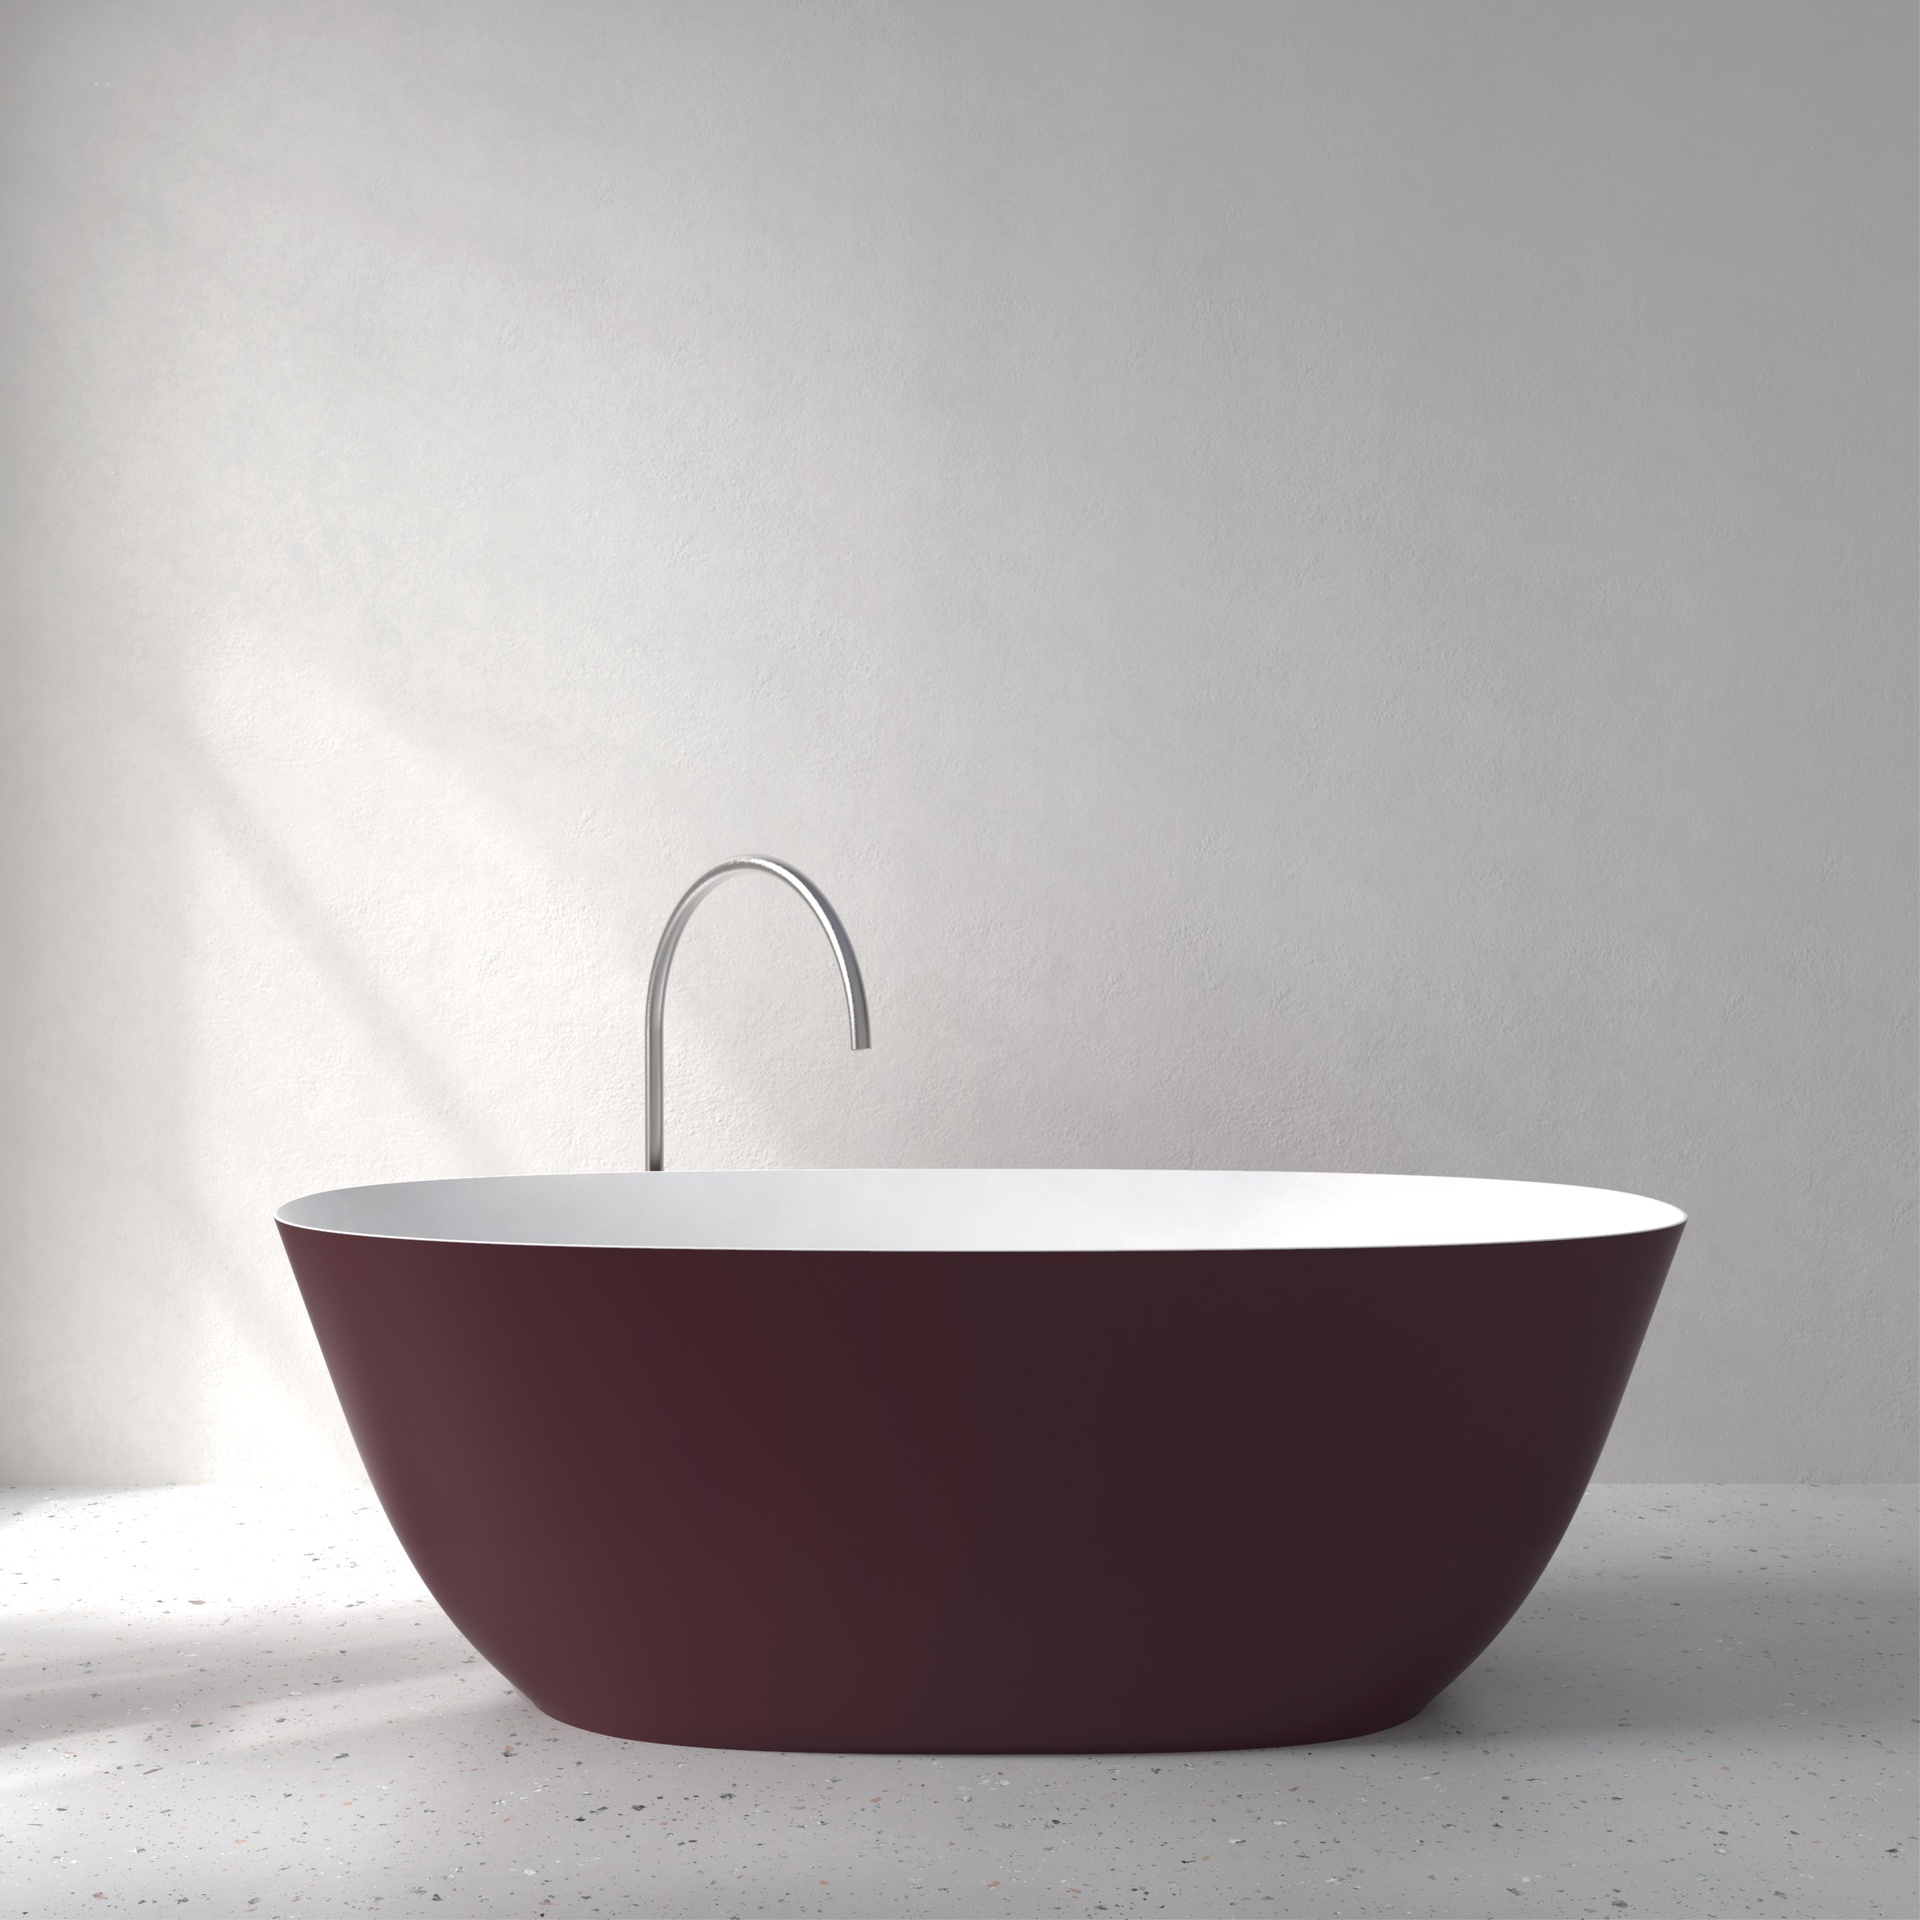 [FFI03-SNCS] Fine bath with Soft Touch (w1700 x d750 x h580mm, NCS color)